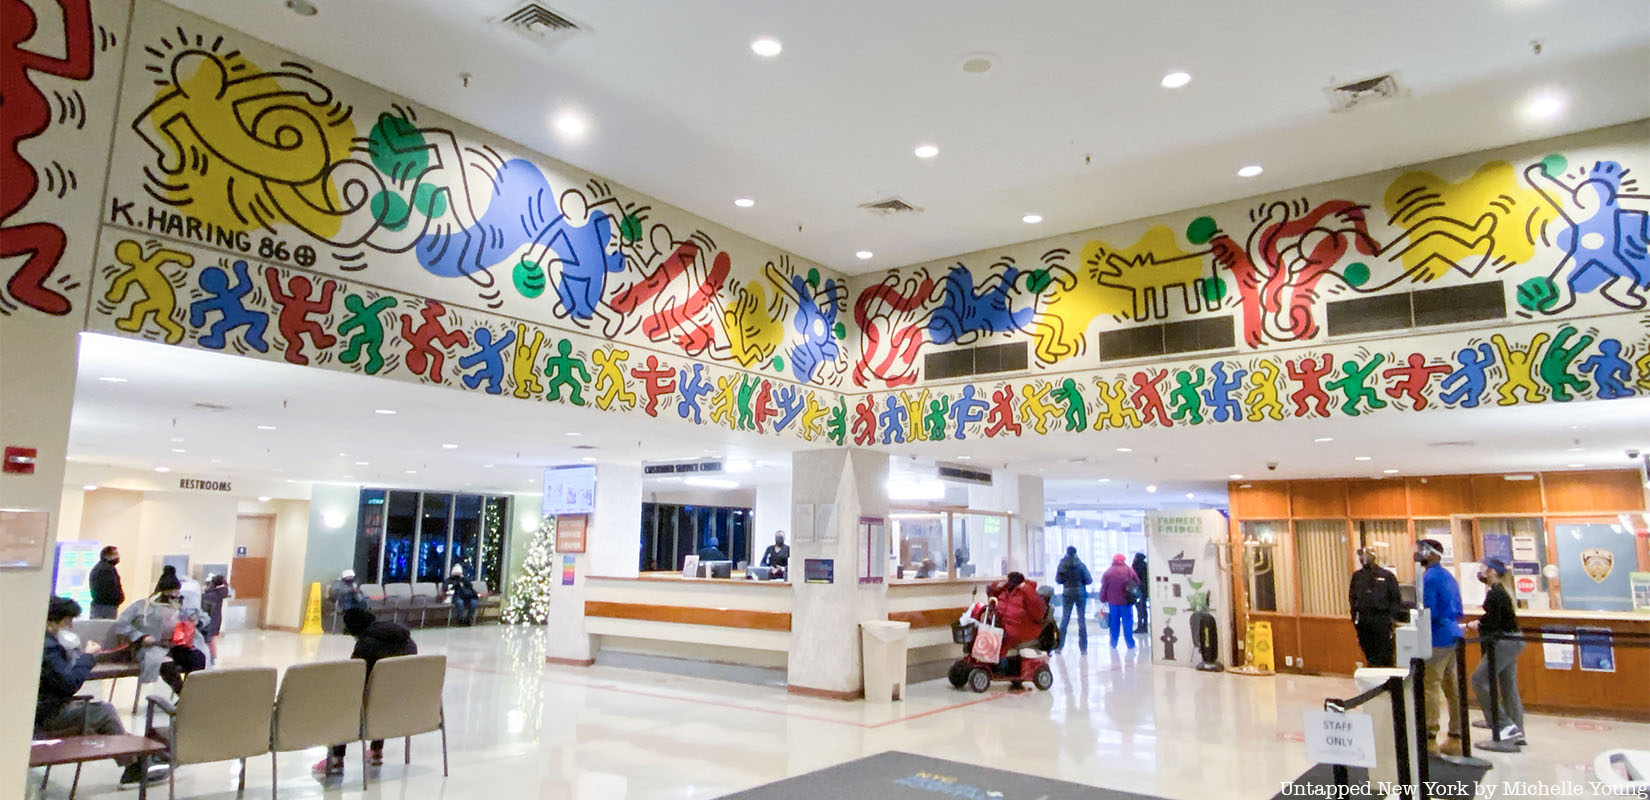 Keith Haring mural at Woodhull Hospital